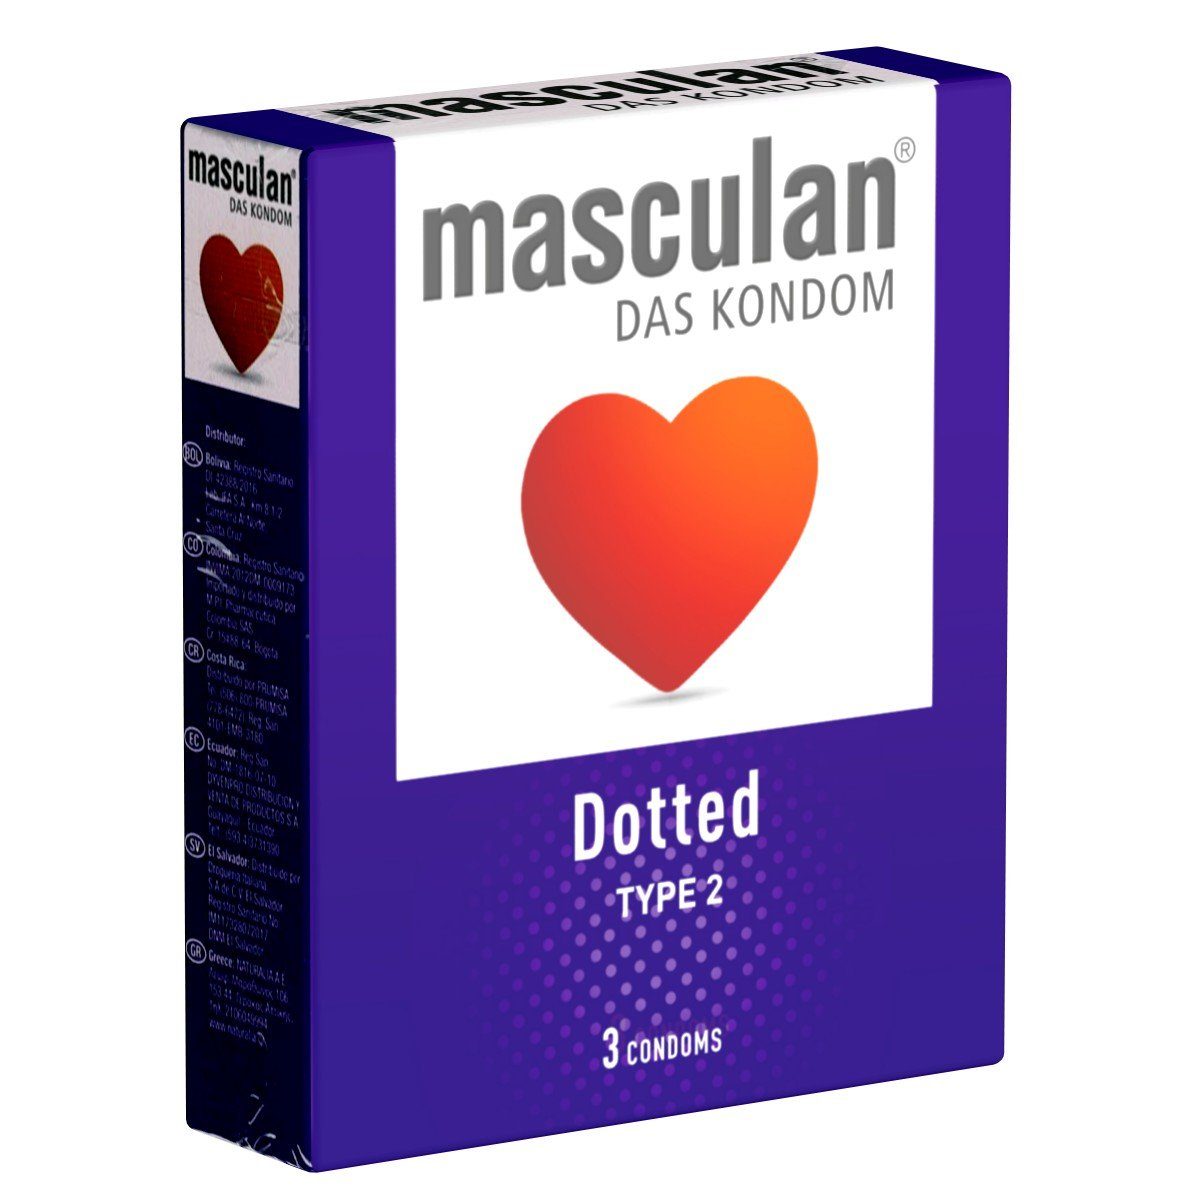 Masculan Kondome Typ 2 (dotted) Packung mit, 3 St., genoppte Kondome für mehr Gefühl